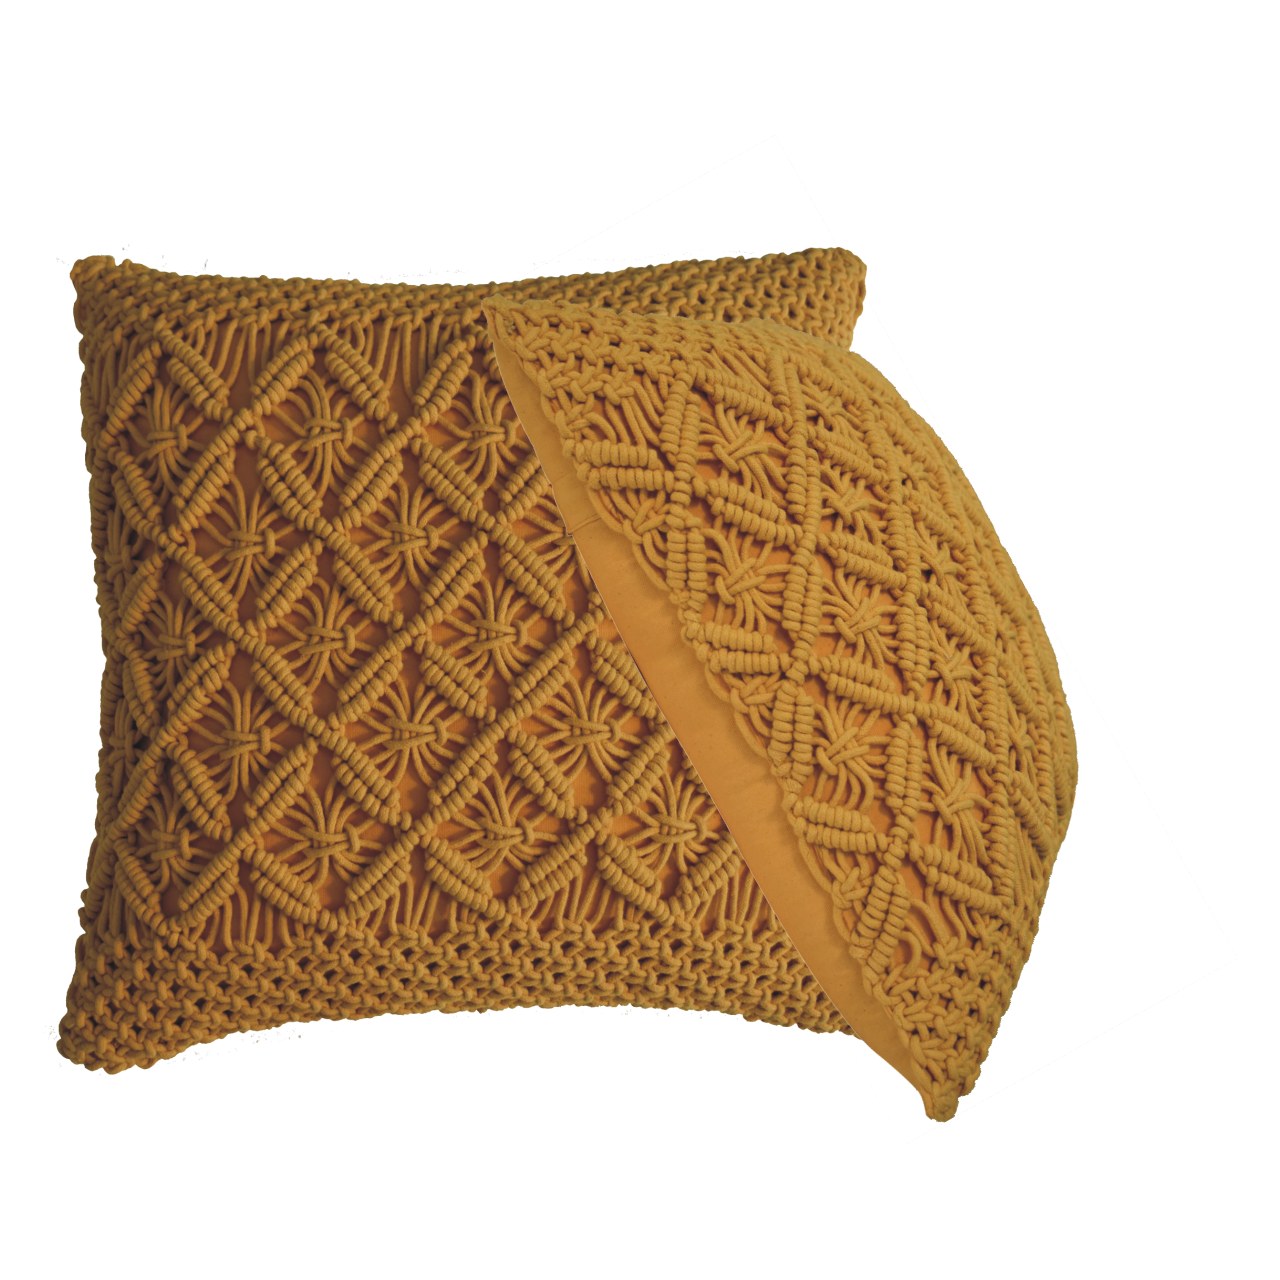 Lira Cushion Set of 2 - Mustard - CasaFenix